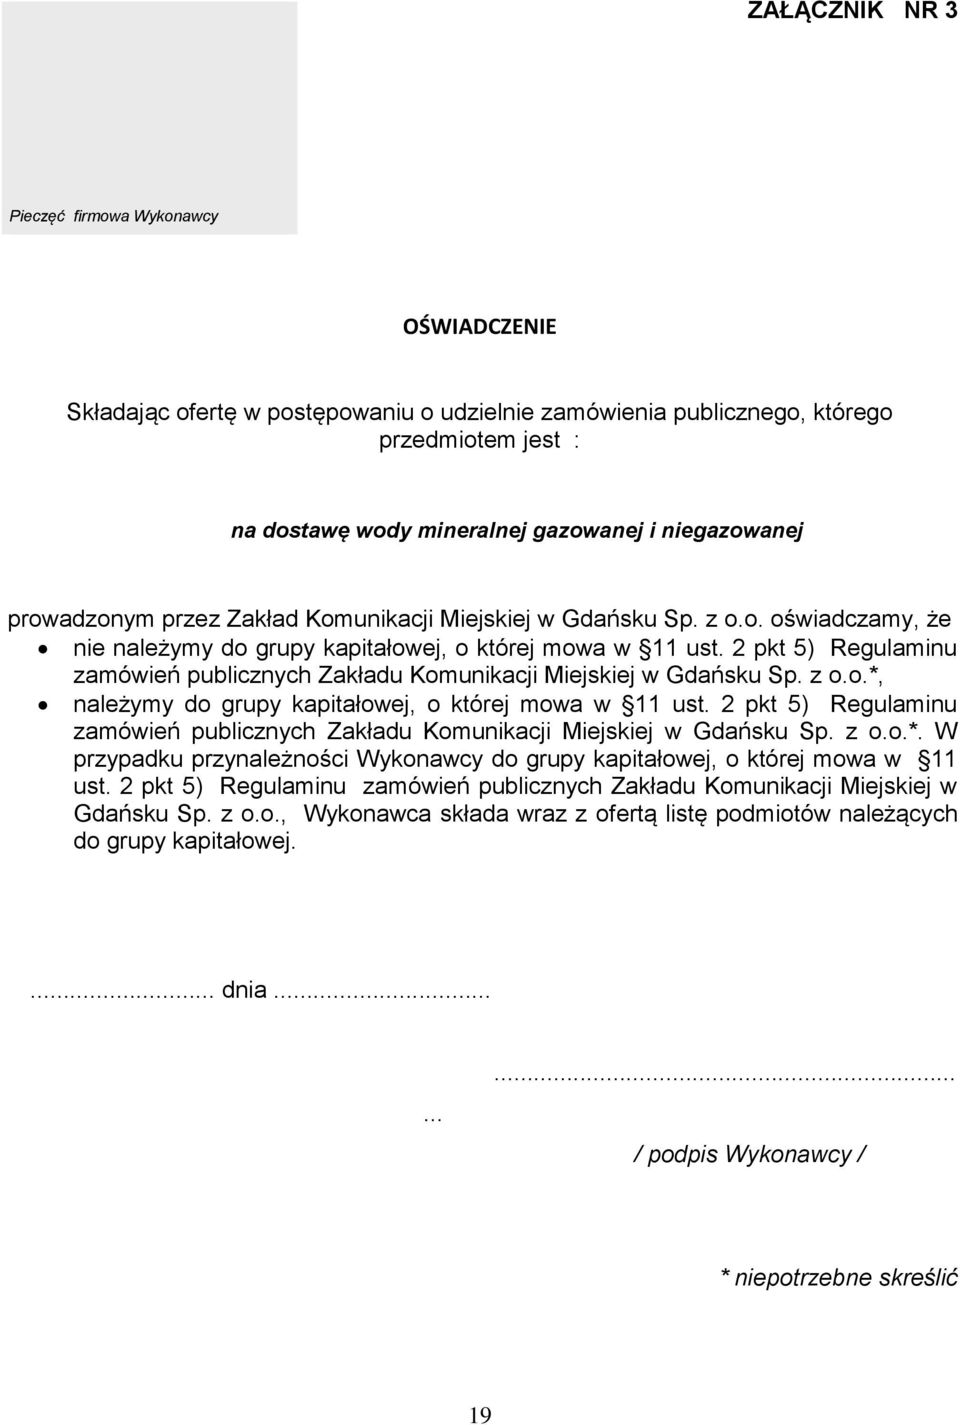 2 pkt 5) Regulaminu zamówień publicznych Zakładu Komunikacji Miejskiej w Gdańsku Sp. z o.o.*, należymy do grupy kapitałowej, o której mowa w 11 ust.